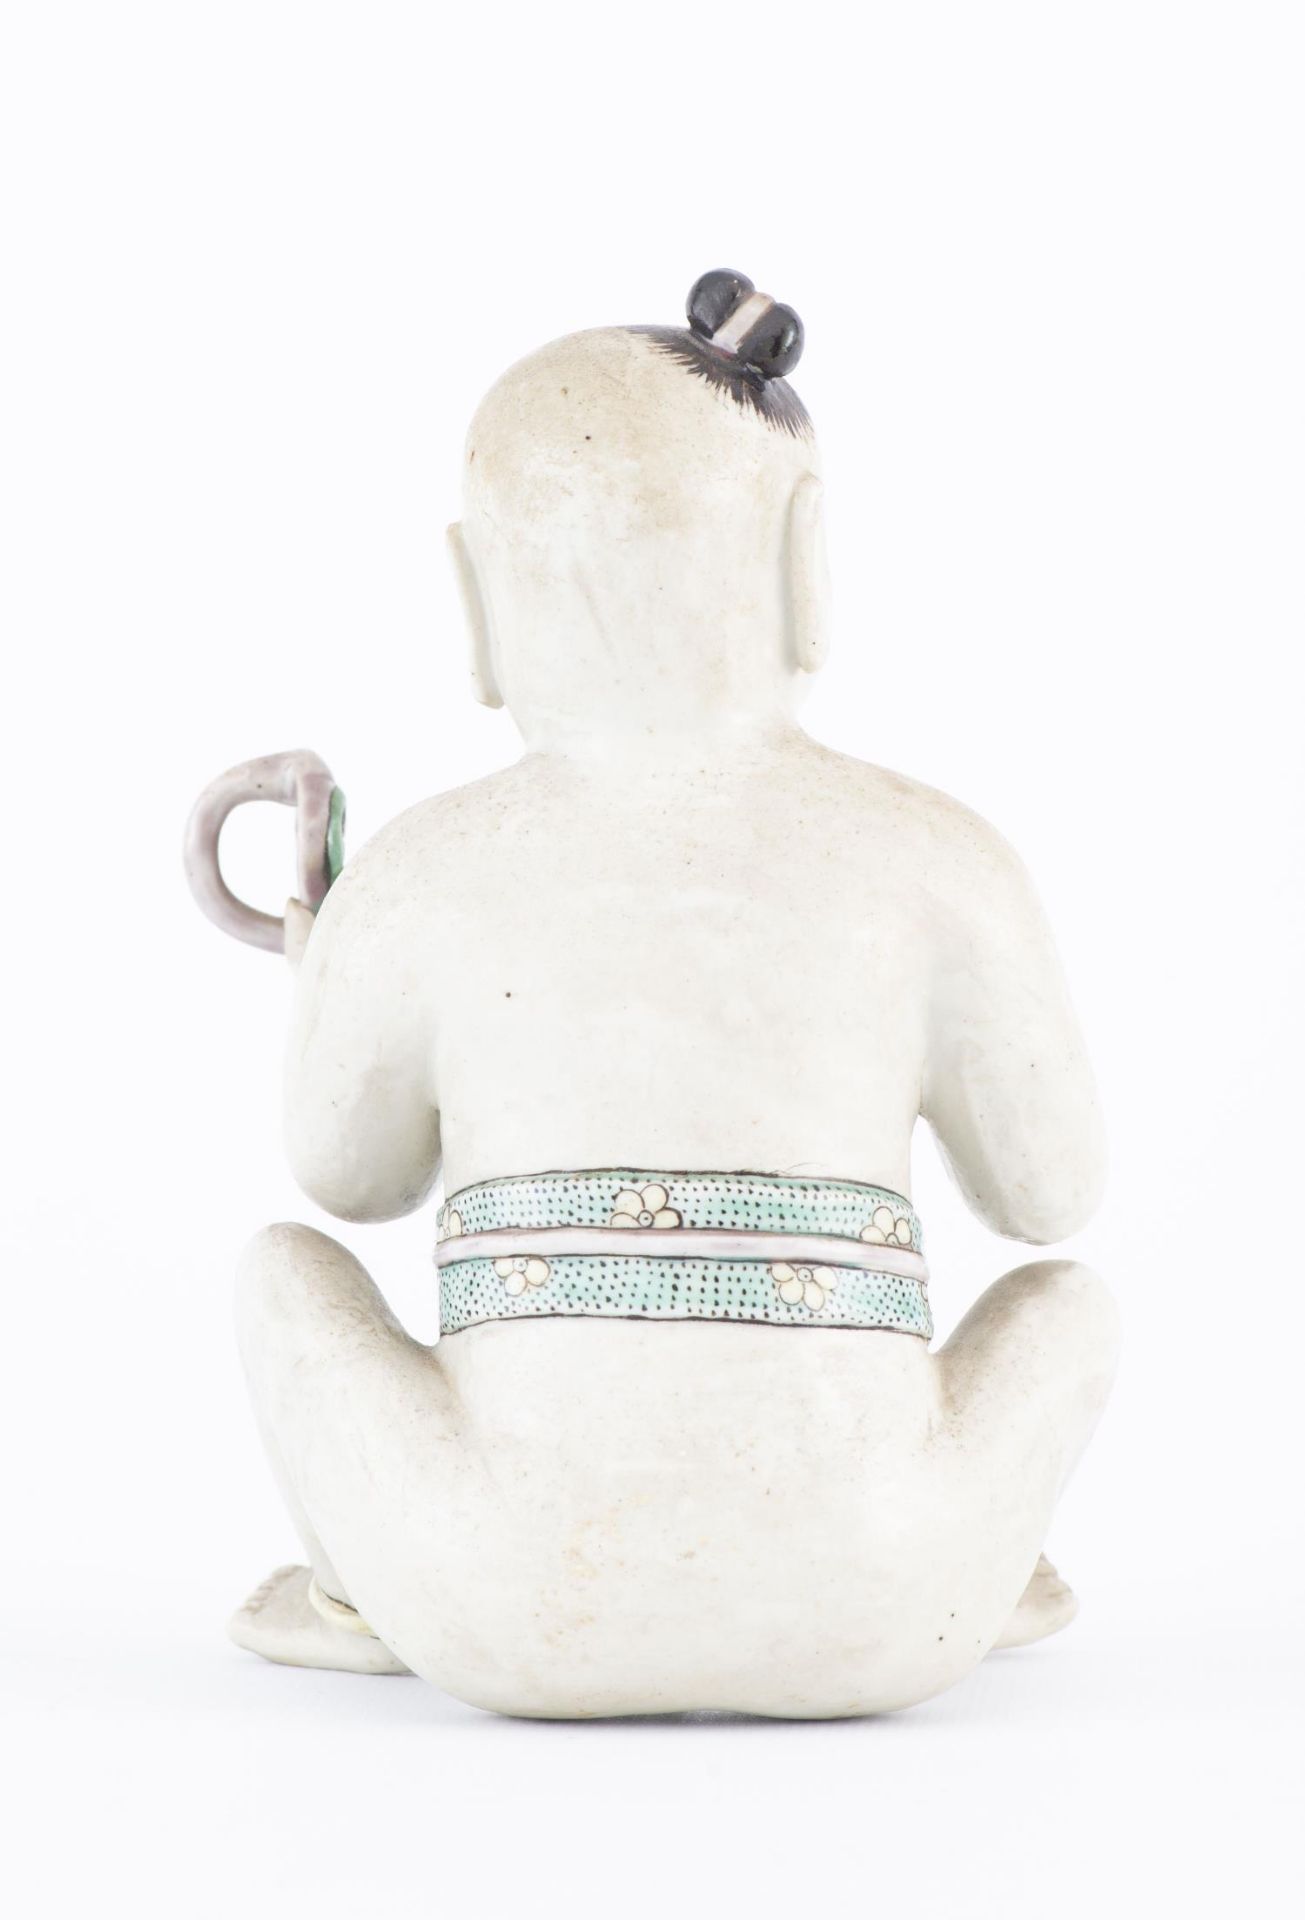 Statuette d'un Hoho (jeune garçon) assis en biscuit - Image 6 of 18